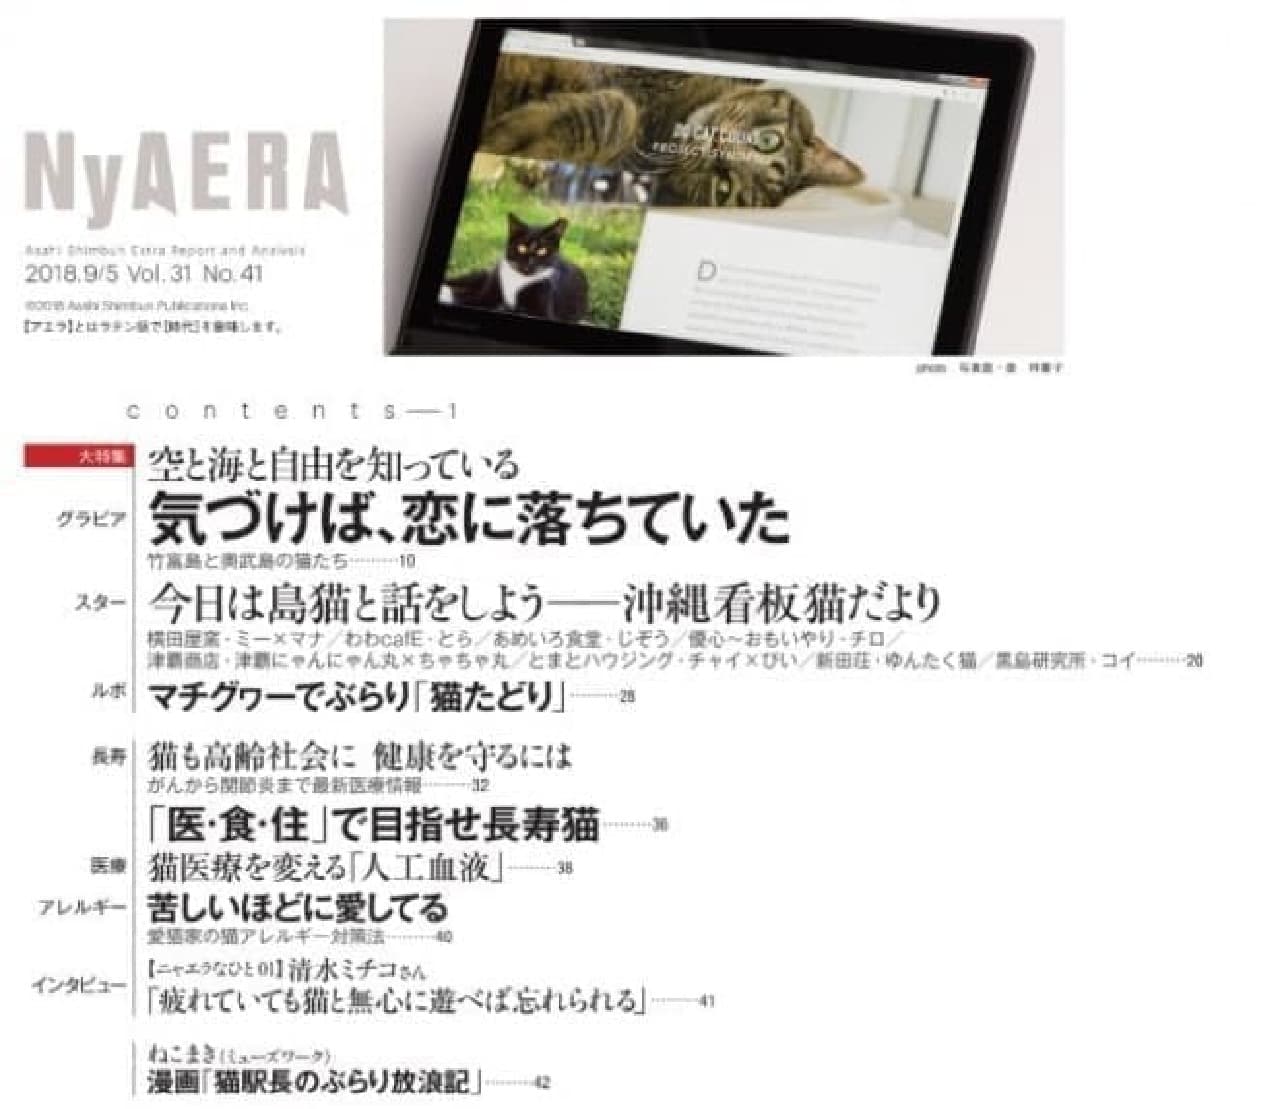 夏も「AERA」がネコまみれ…「NyAERA (ニャエラ) みっけ」の表紙は、沖昌之さん撮影のトルコのネコ